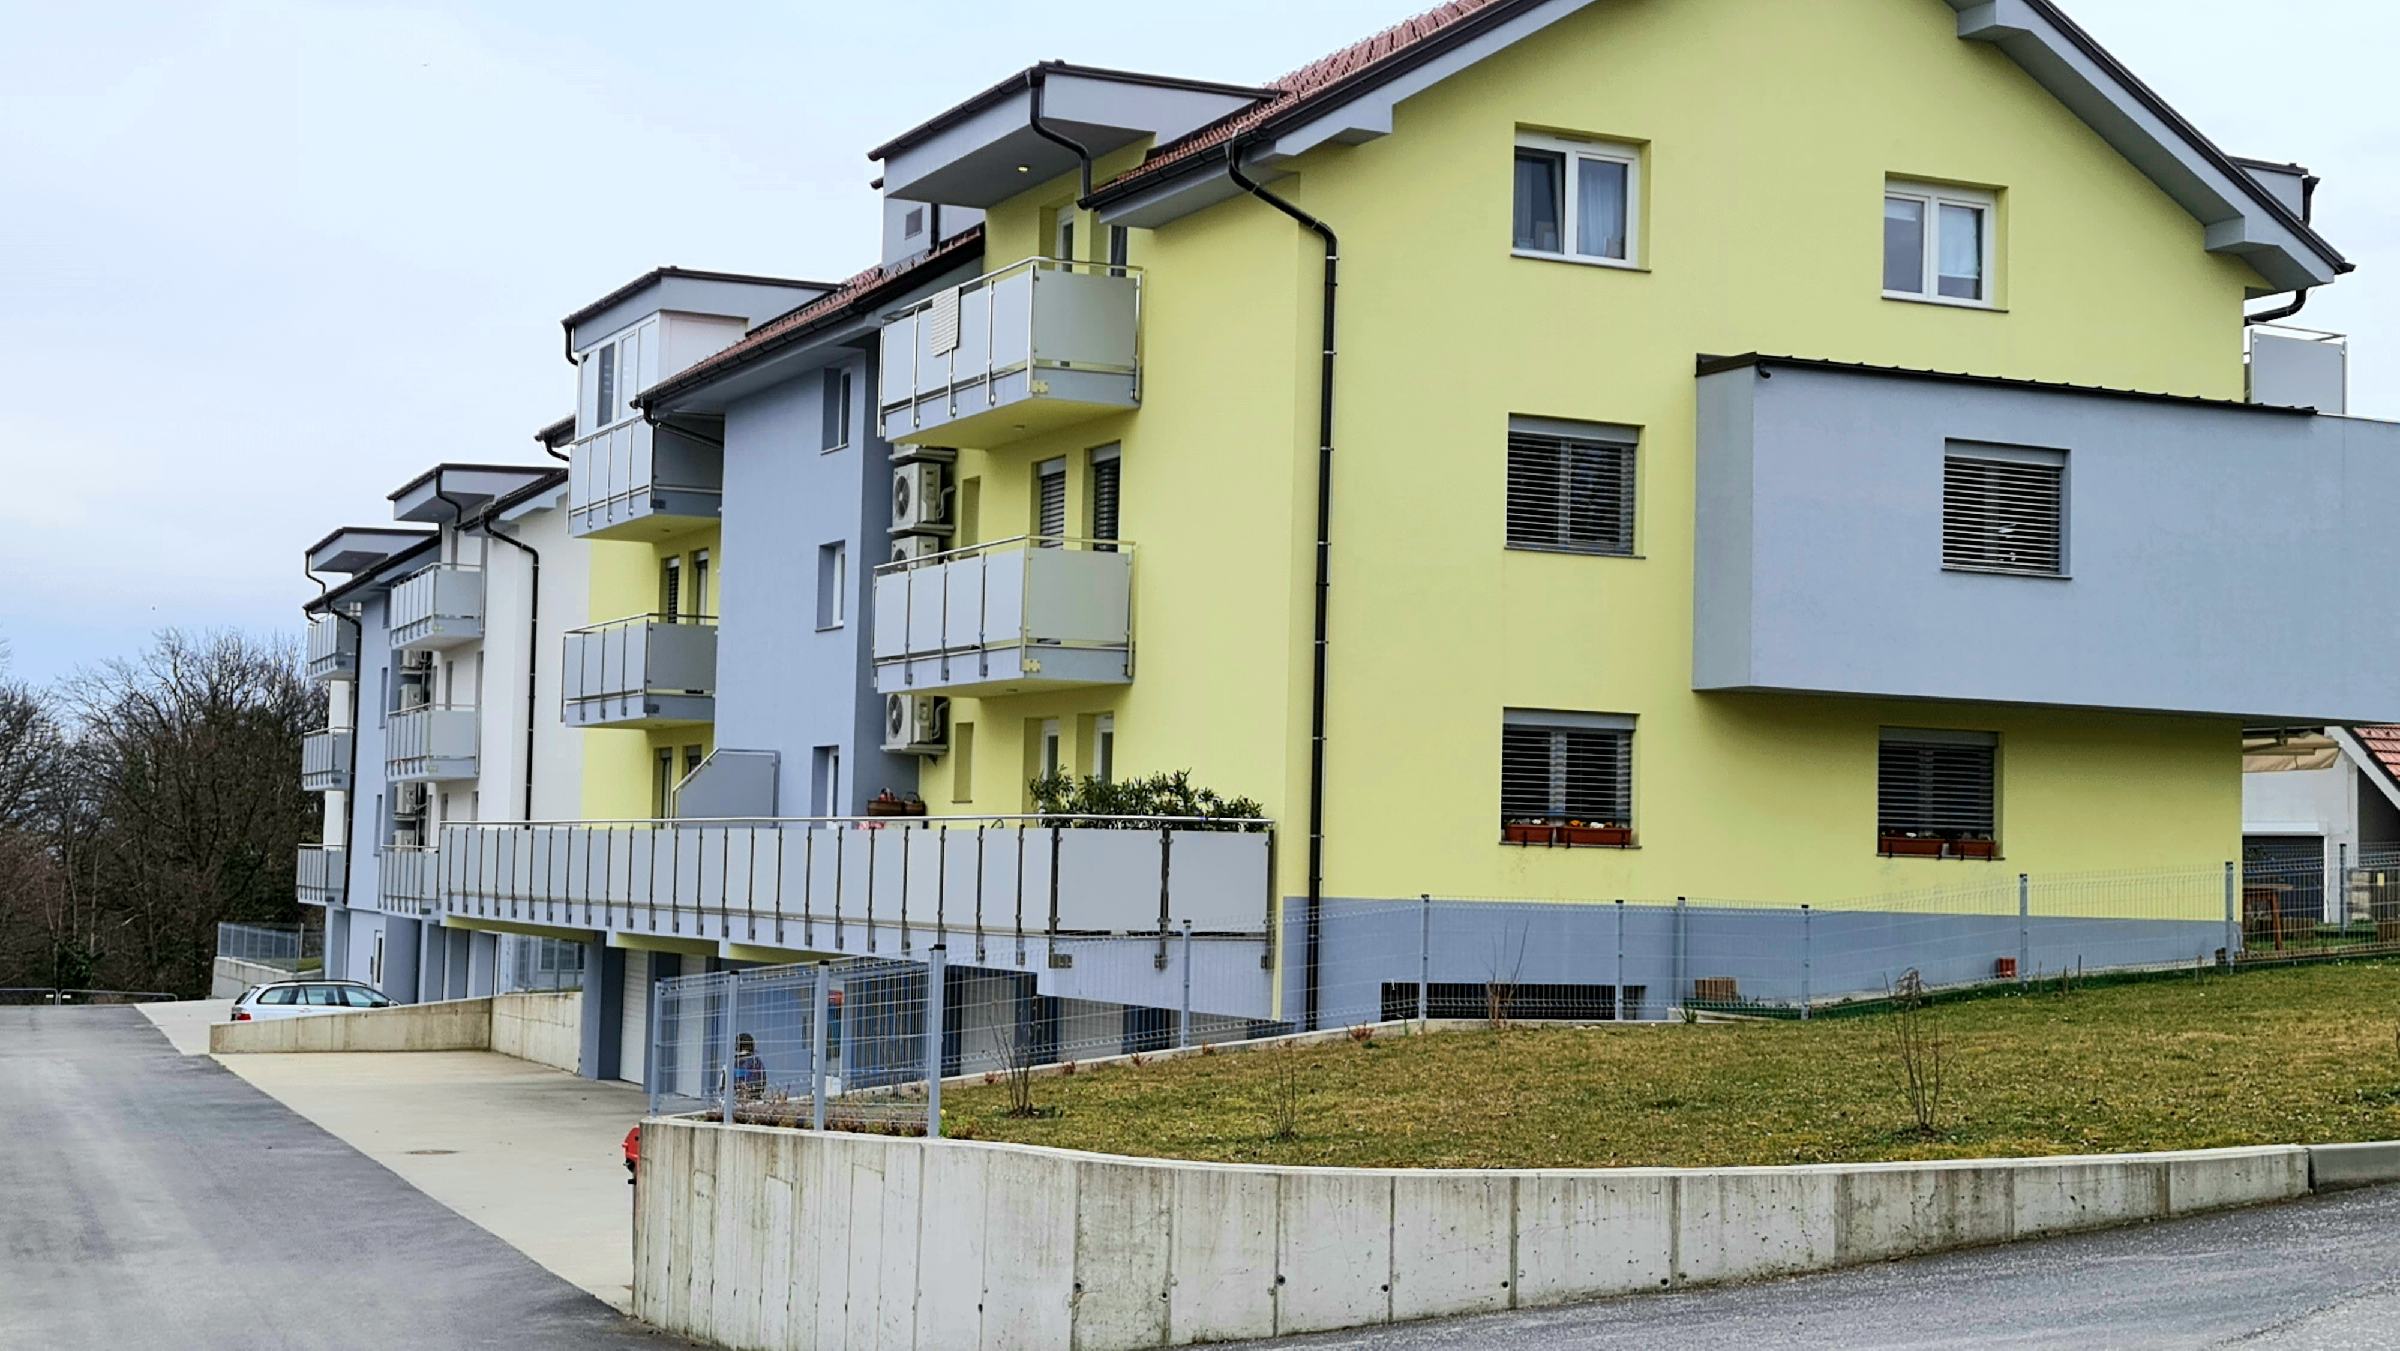 DNEVNA: Sveta Ana s posebnim modelom nakupa stanovanj za mlade družine